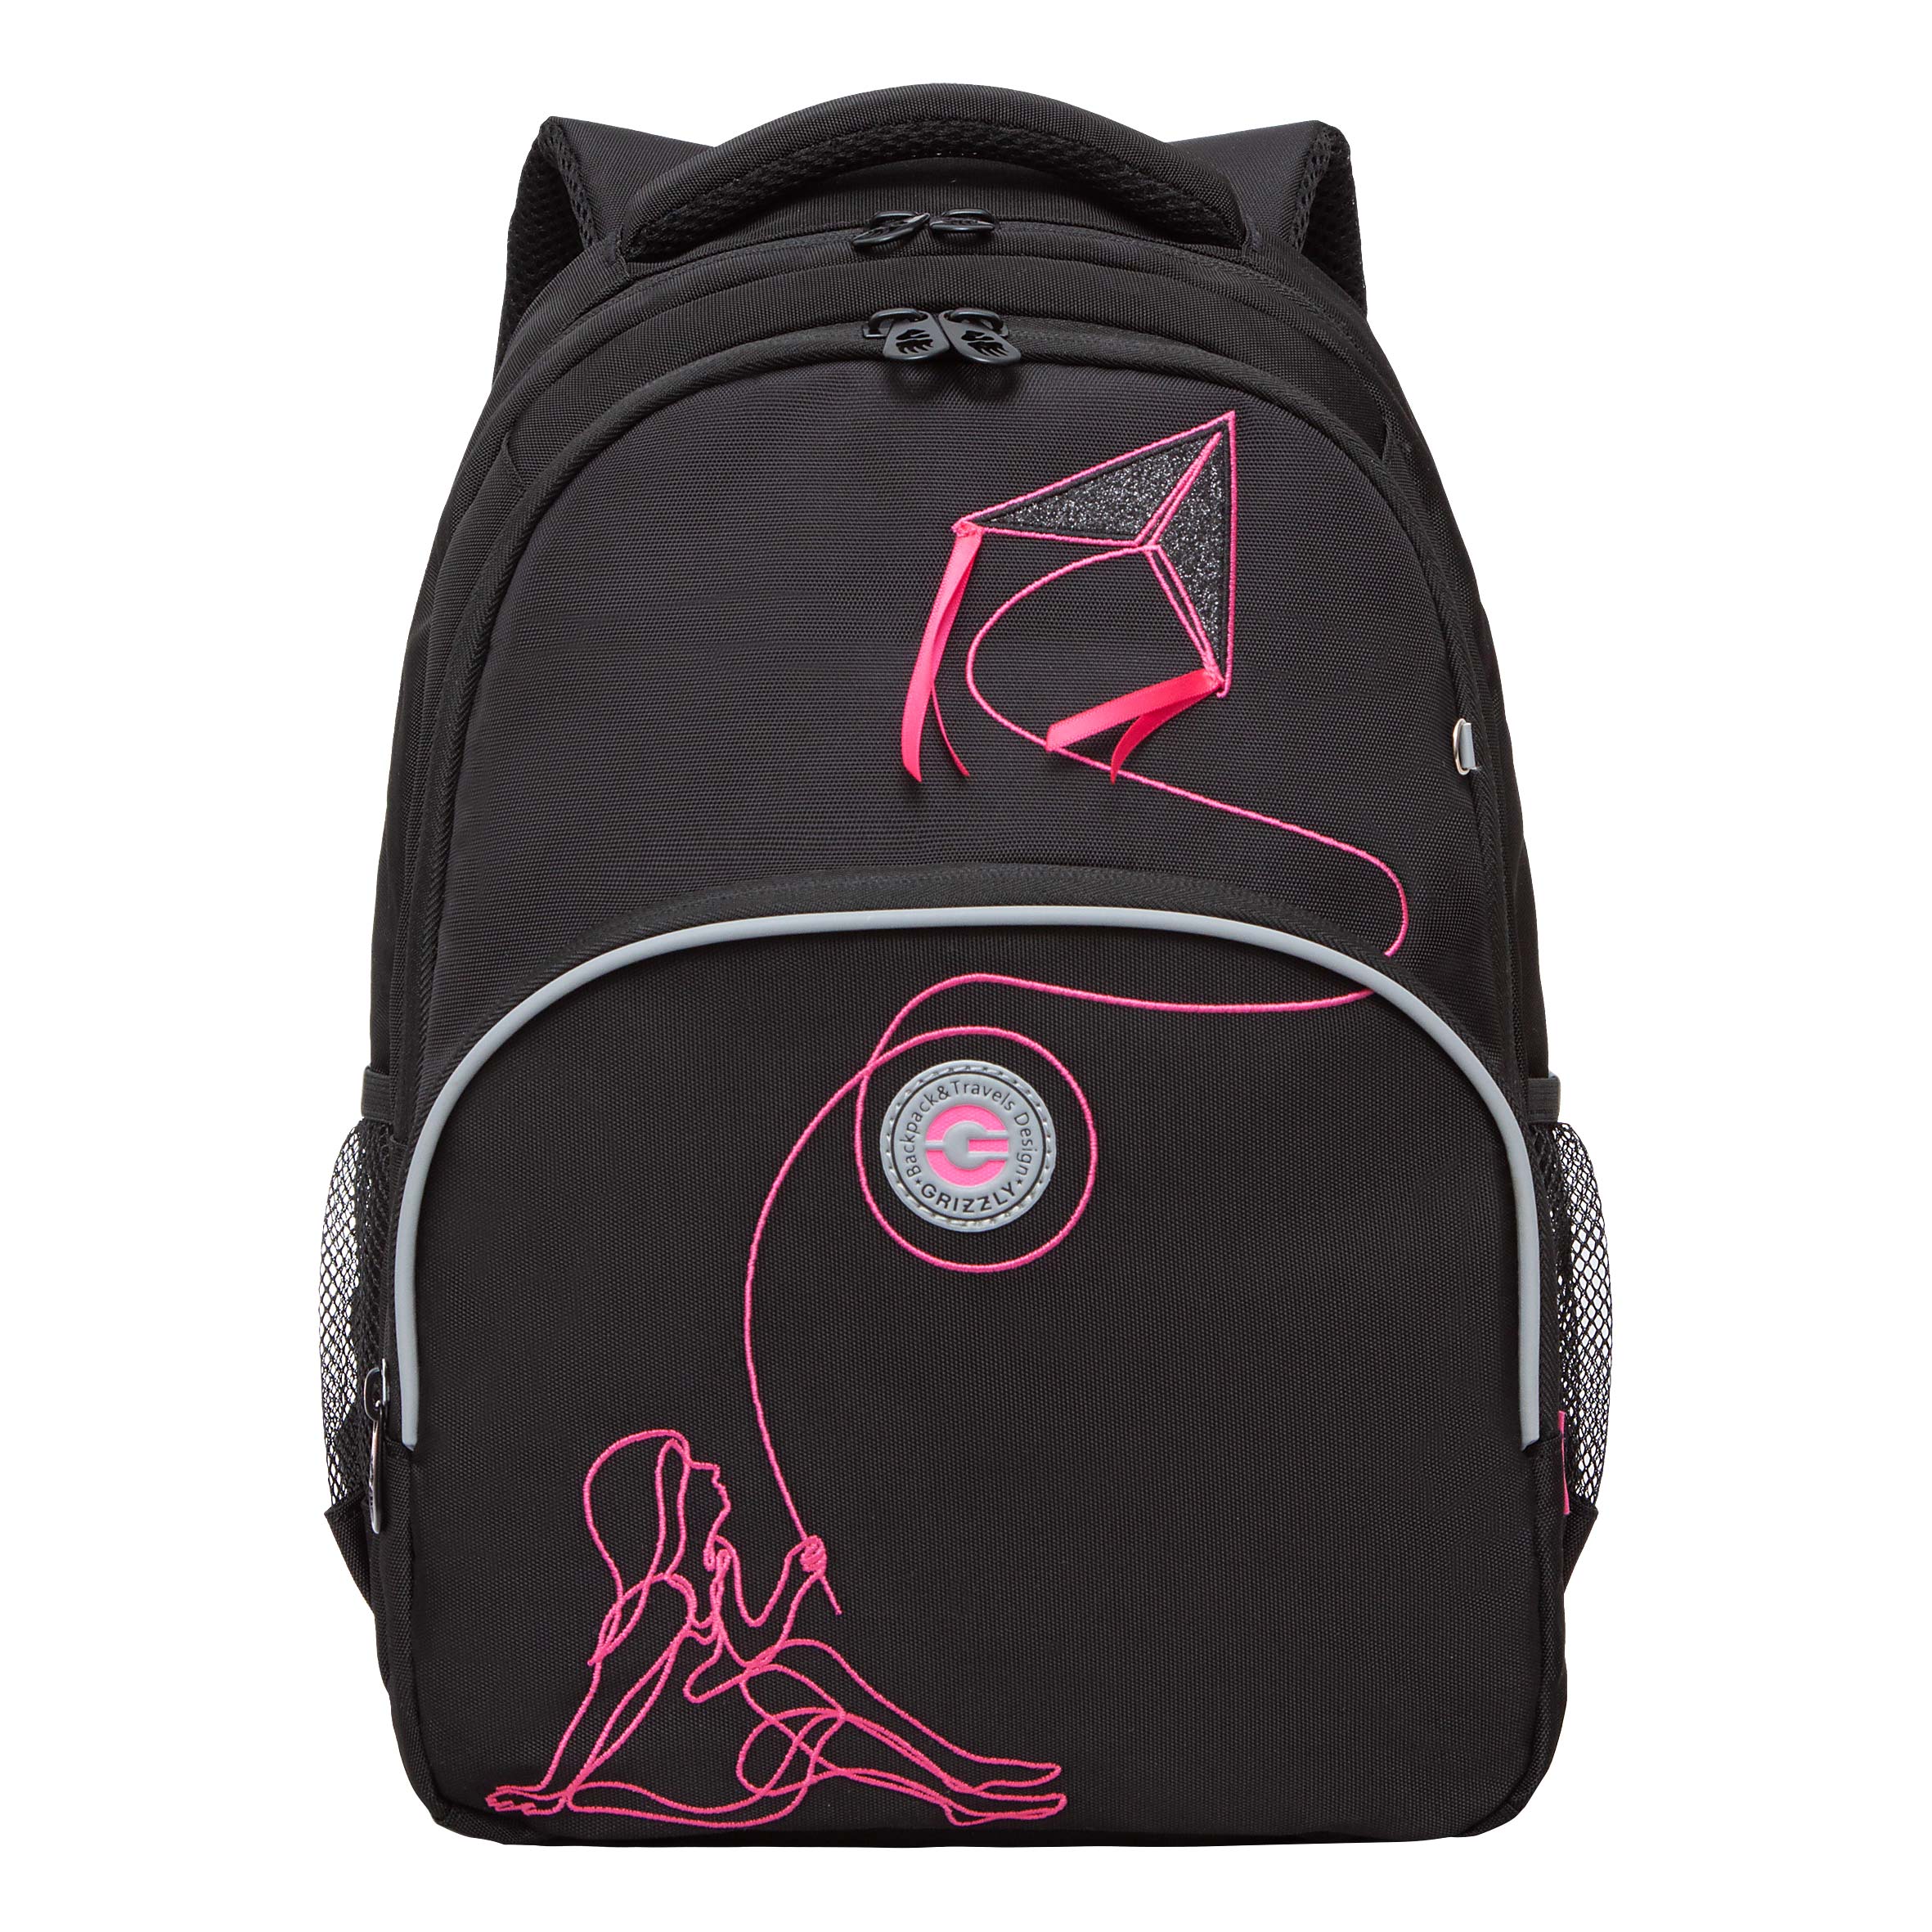 Рюкзак Grizzly школьный для девочки RG-360-8 1 черный - фуксия рюкзак школьный grizzly с карманом для ноутбука 13 2 отделения для девочки rg 466 2 1